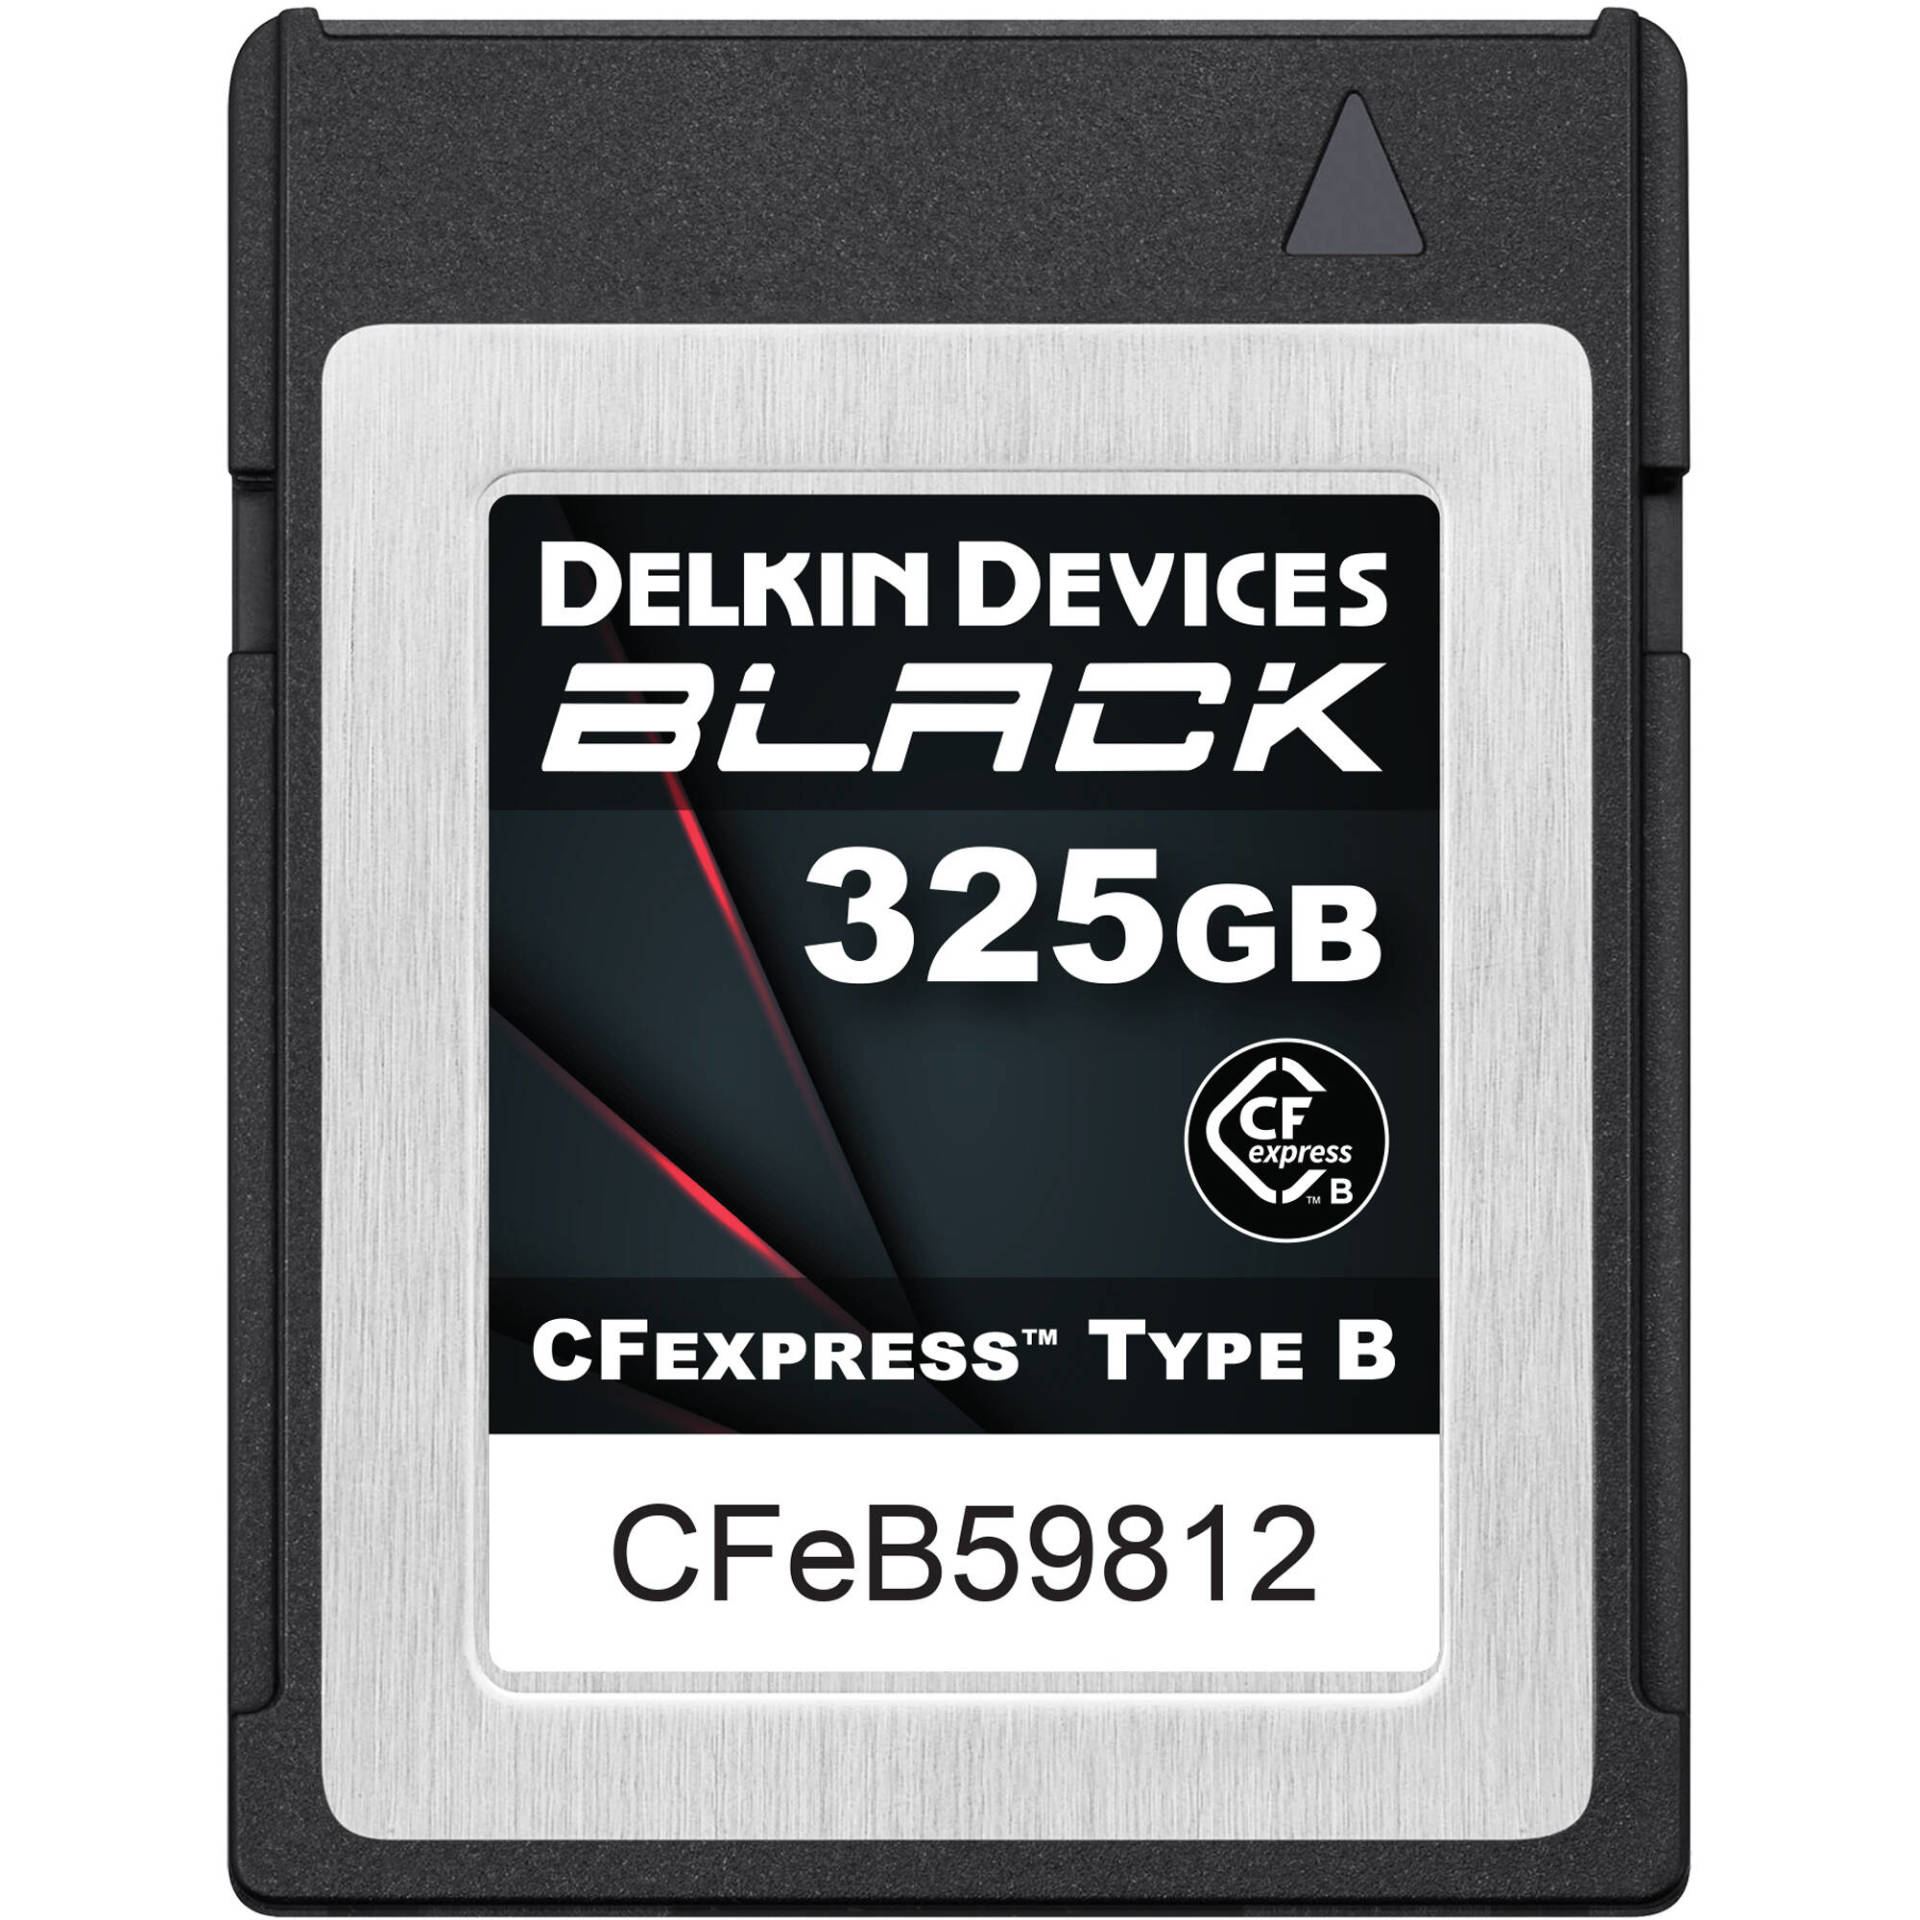 Delkin 325GB BLACK CFexpress™ Type B